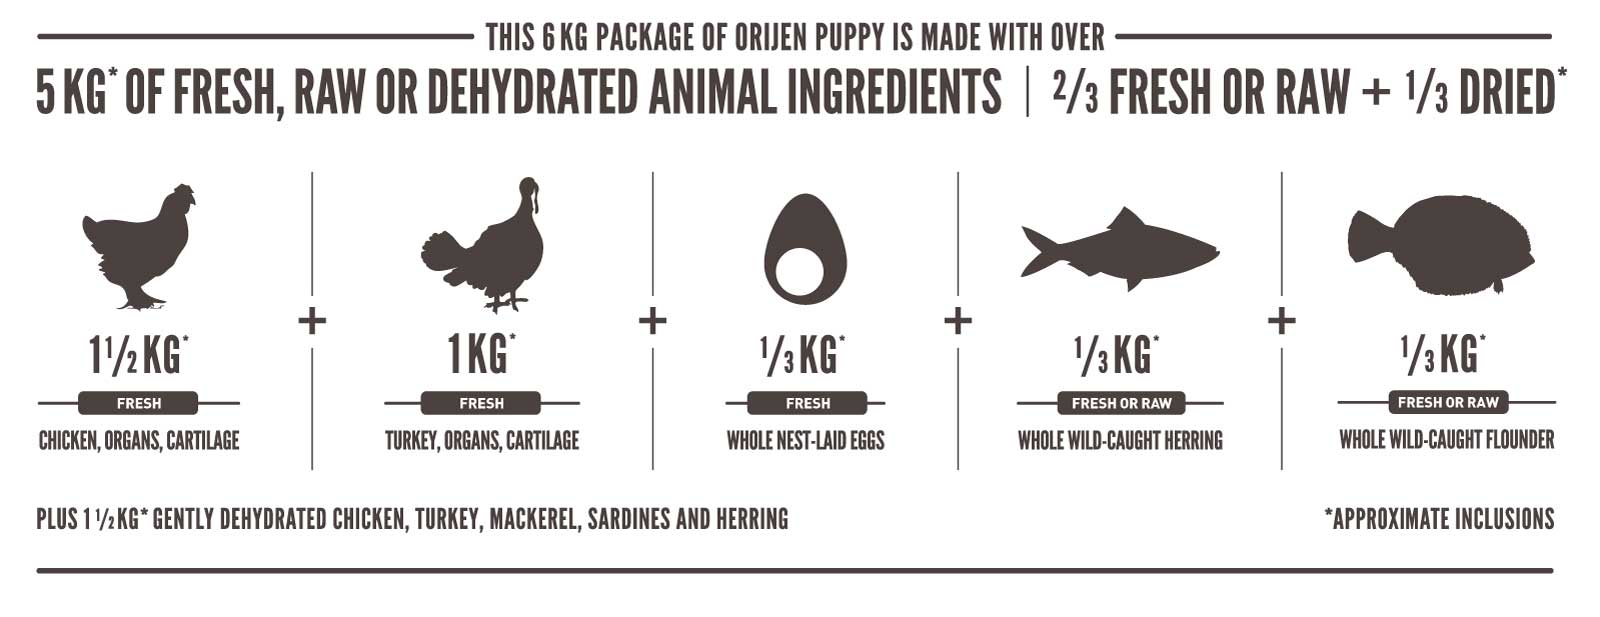 Orijen Puppy Ingredientes